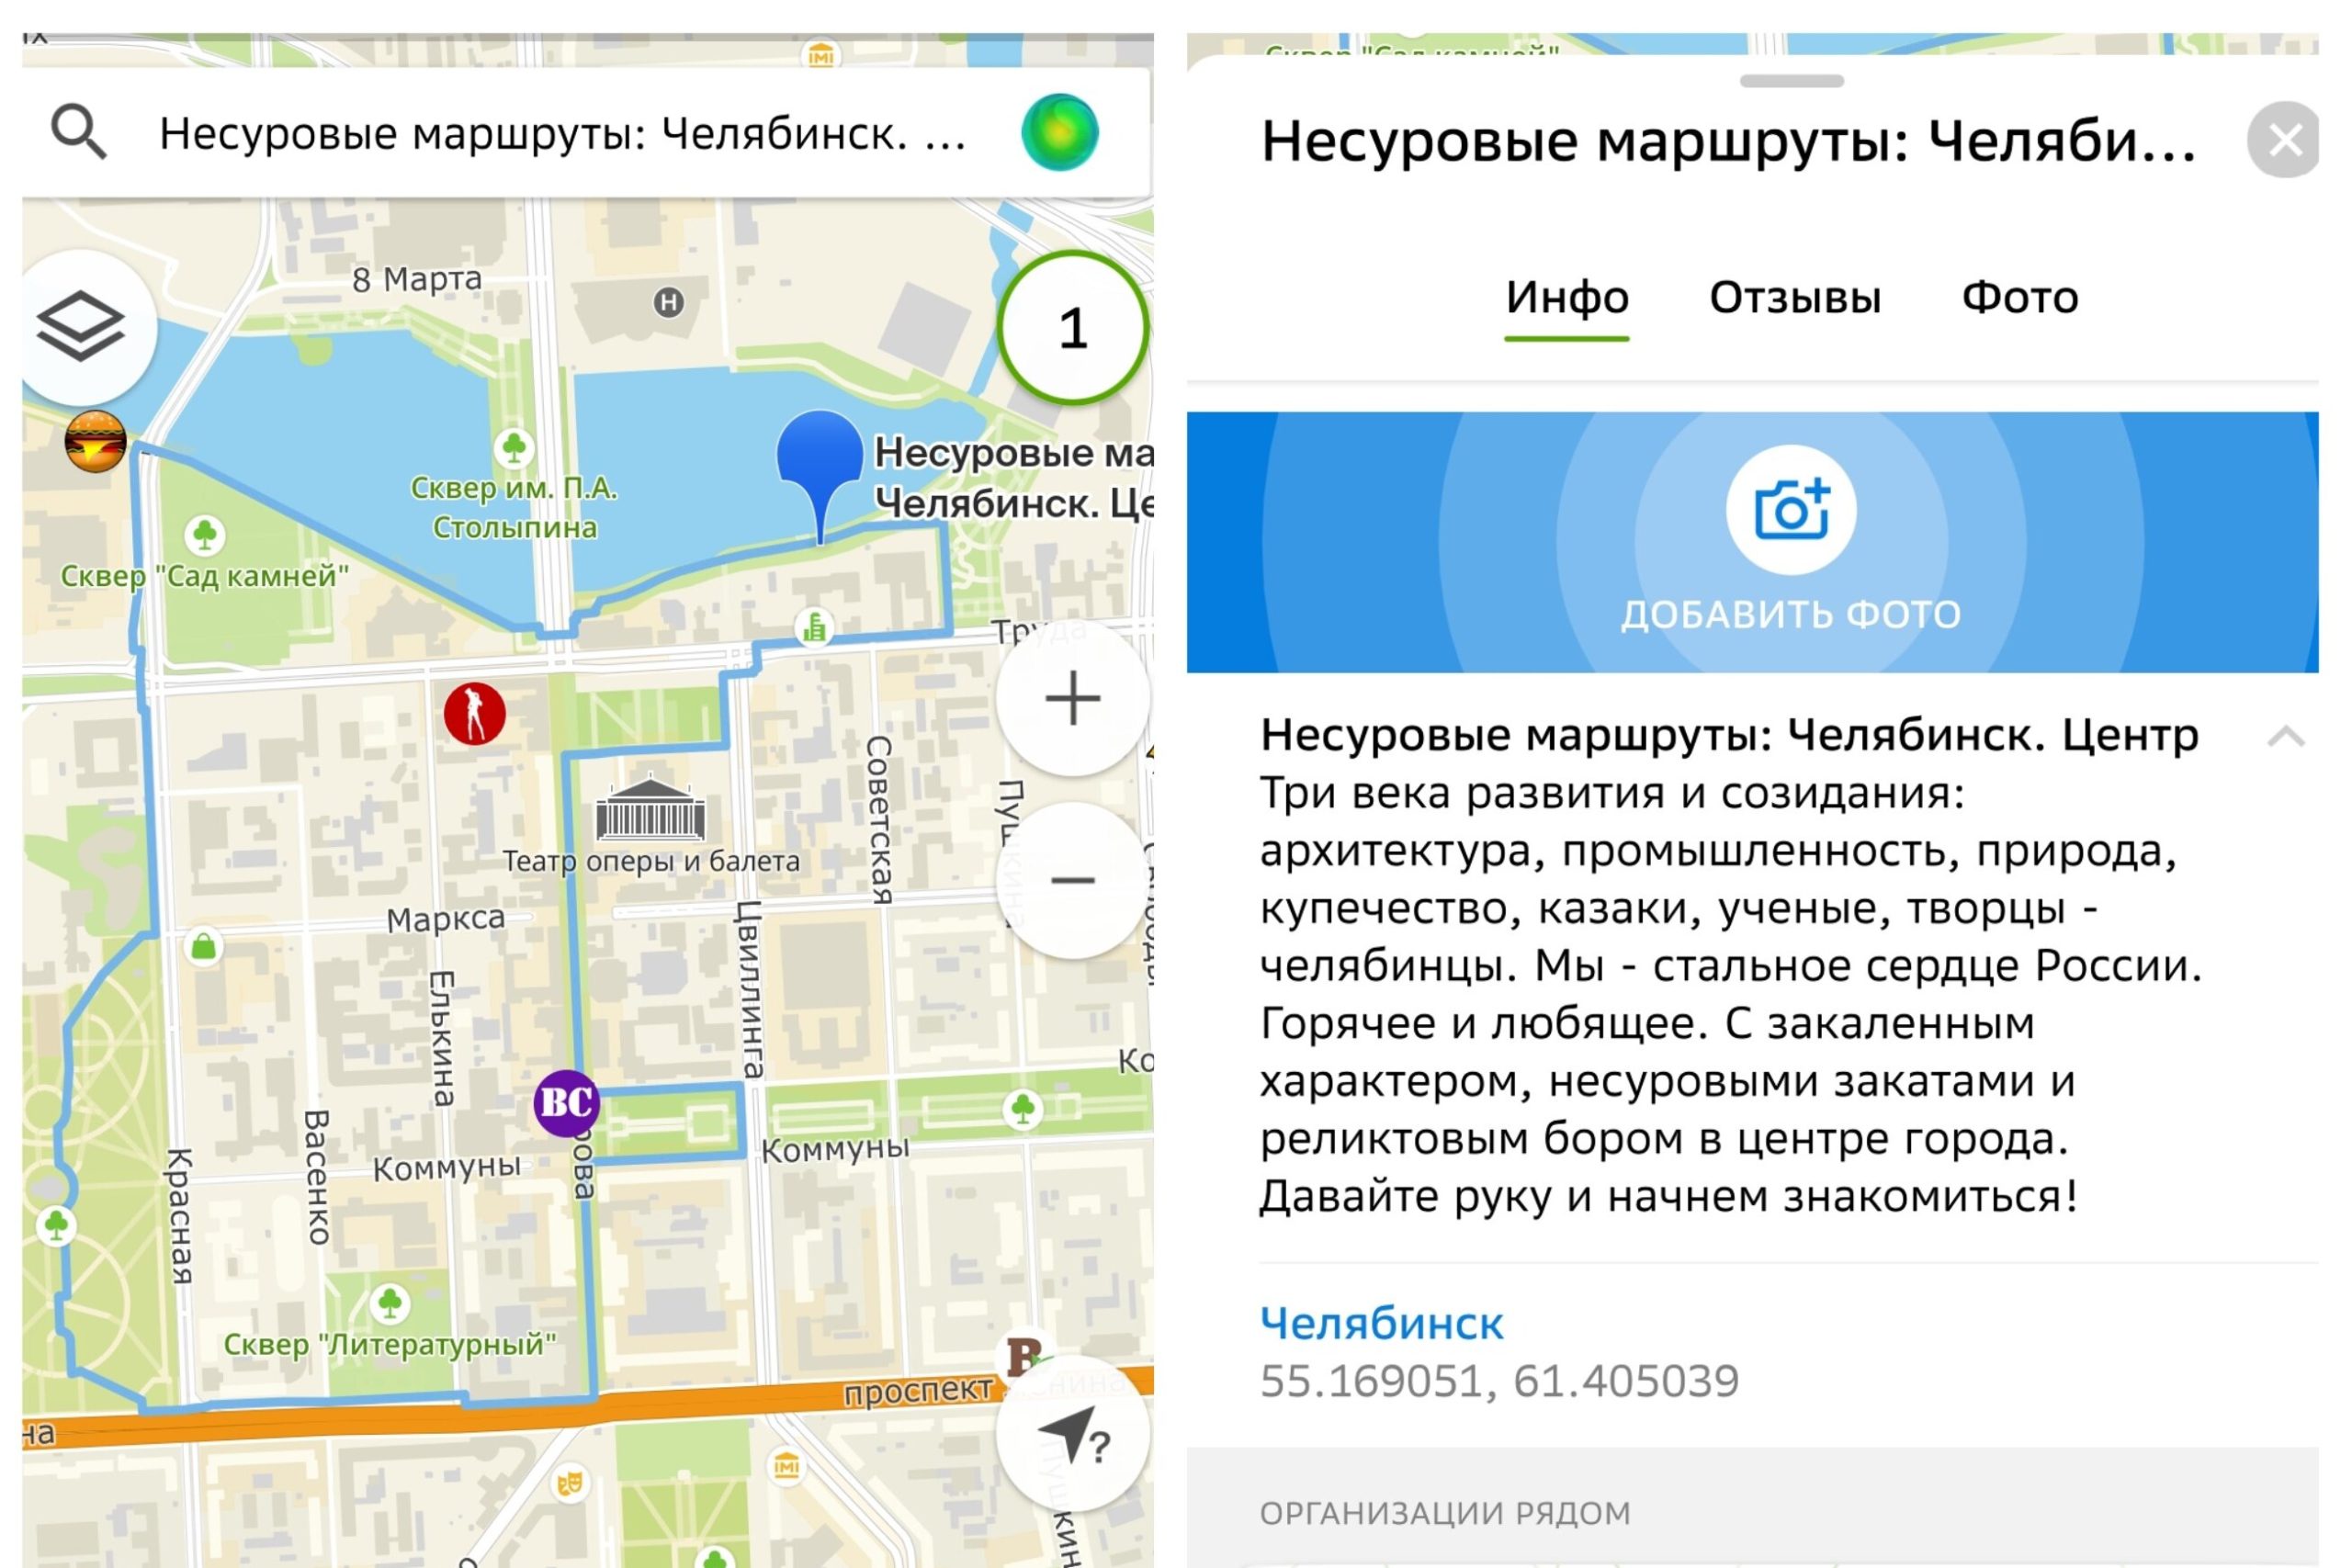 В Челябинске для туристов запустили пеший «Несуровый маршрут» по виртуальной карте